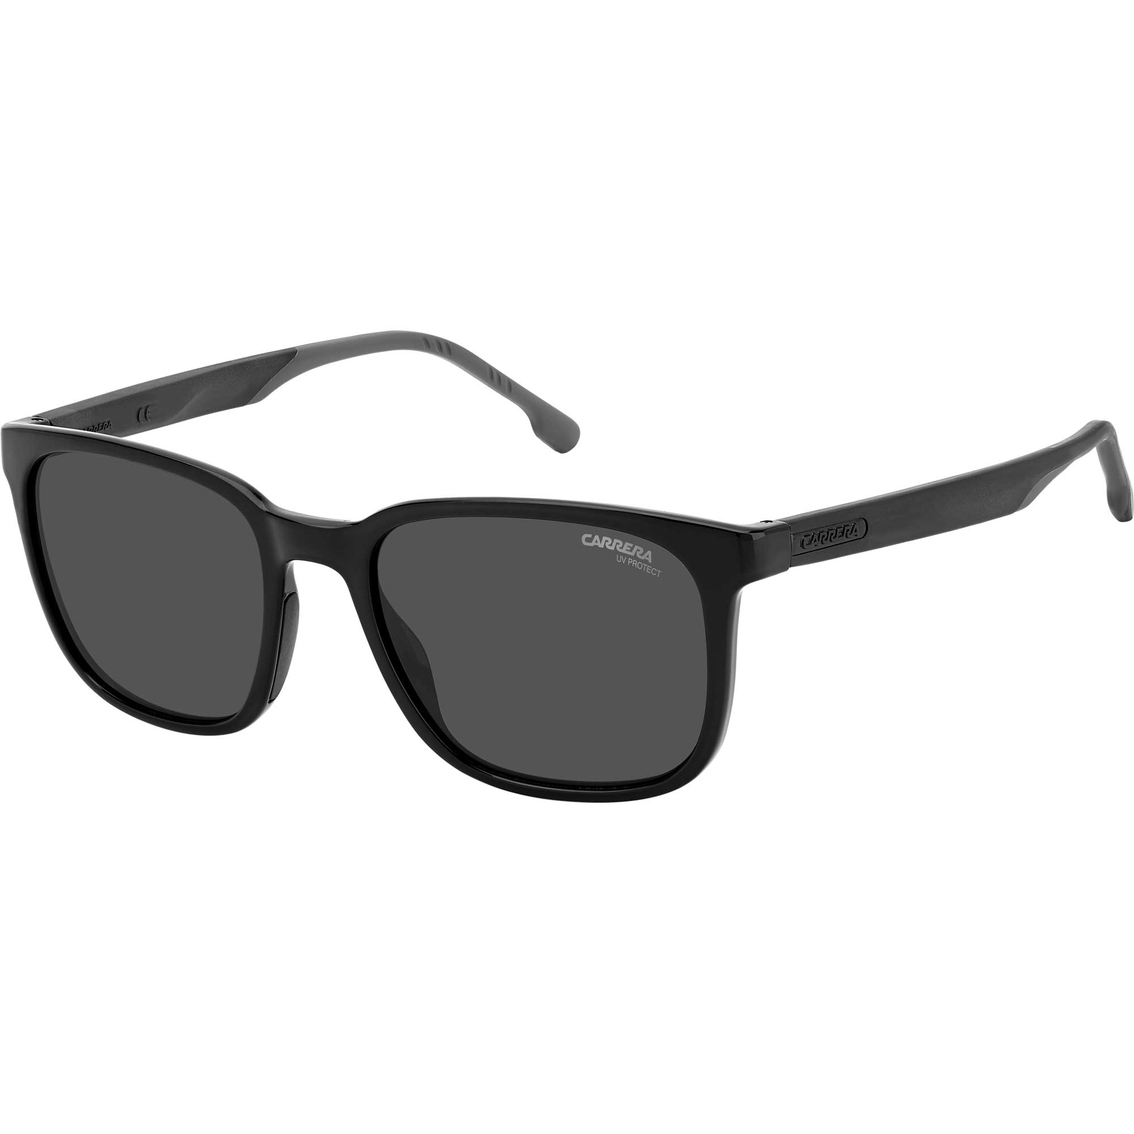 Carrera Rx Able Solid Sunglasses 8046s | Men's Sunglasses | Swim Shop |  Shop The Exchange